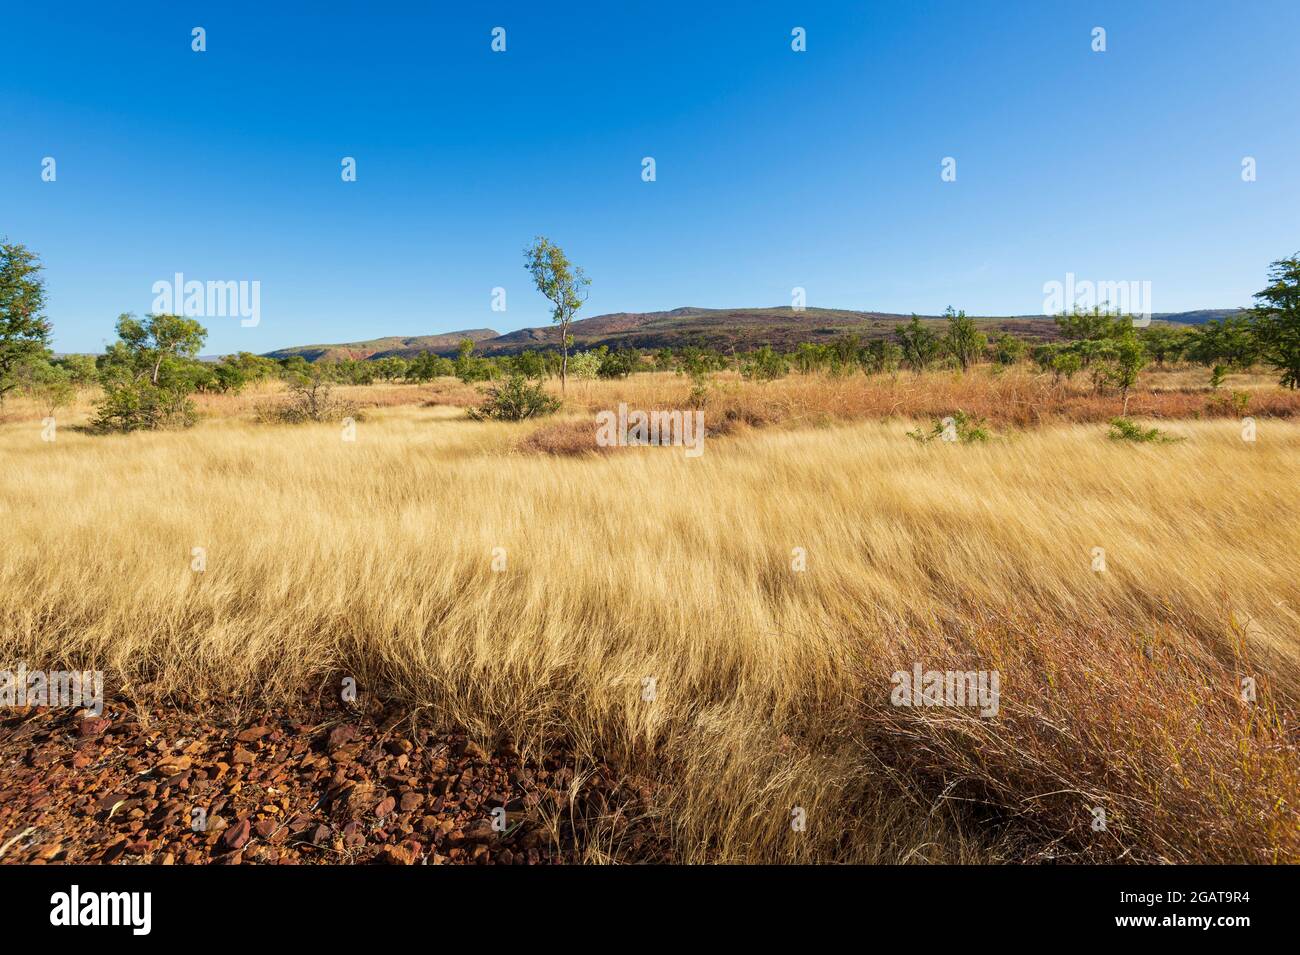 Graminées jaunes poussant dans la savane, Mornington Wilderness Camp, région de Kimberley, Australie occidentale, WA, Australie Banque D'Images